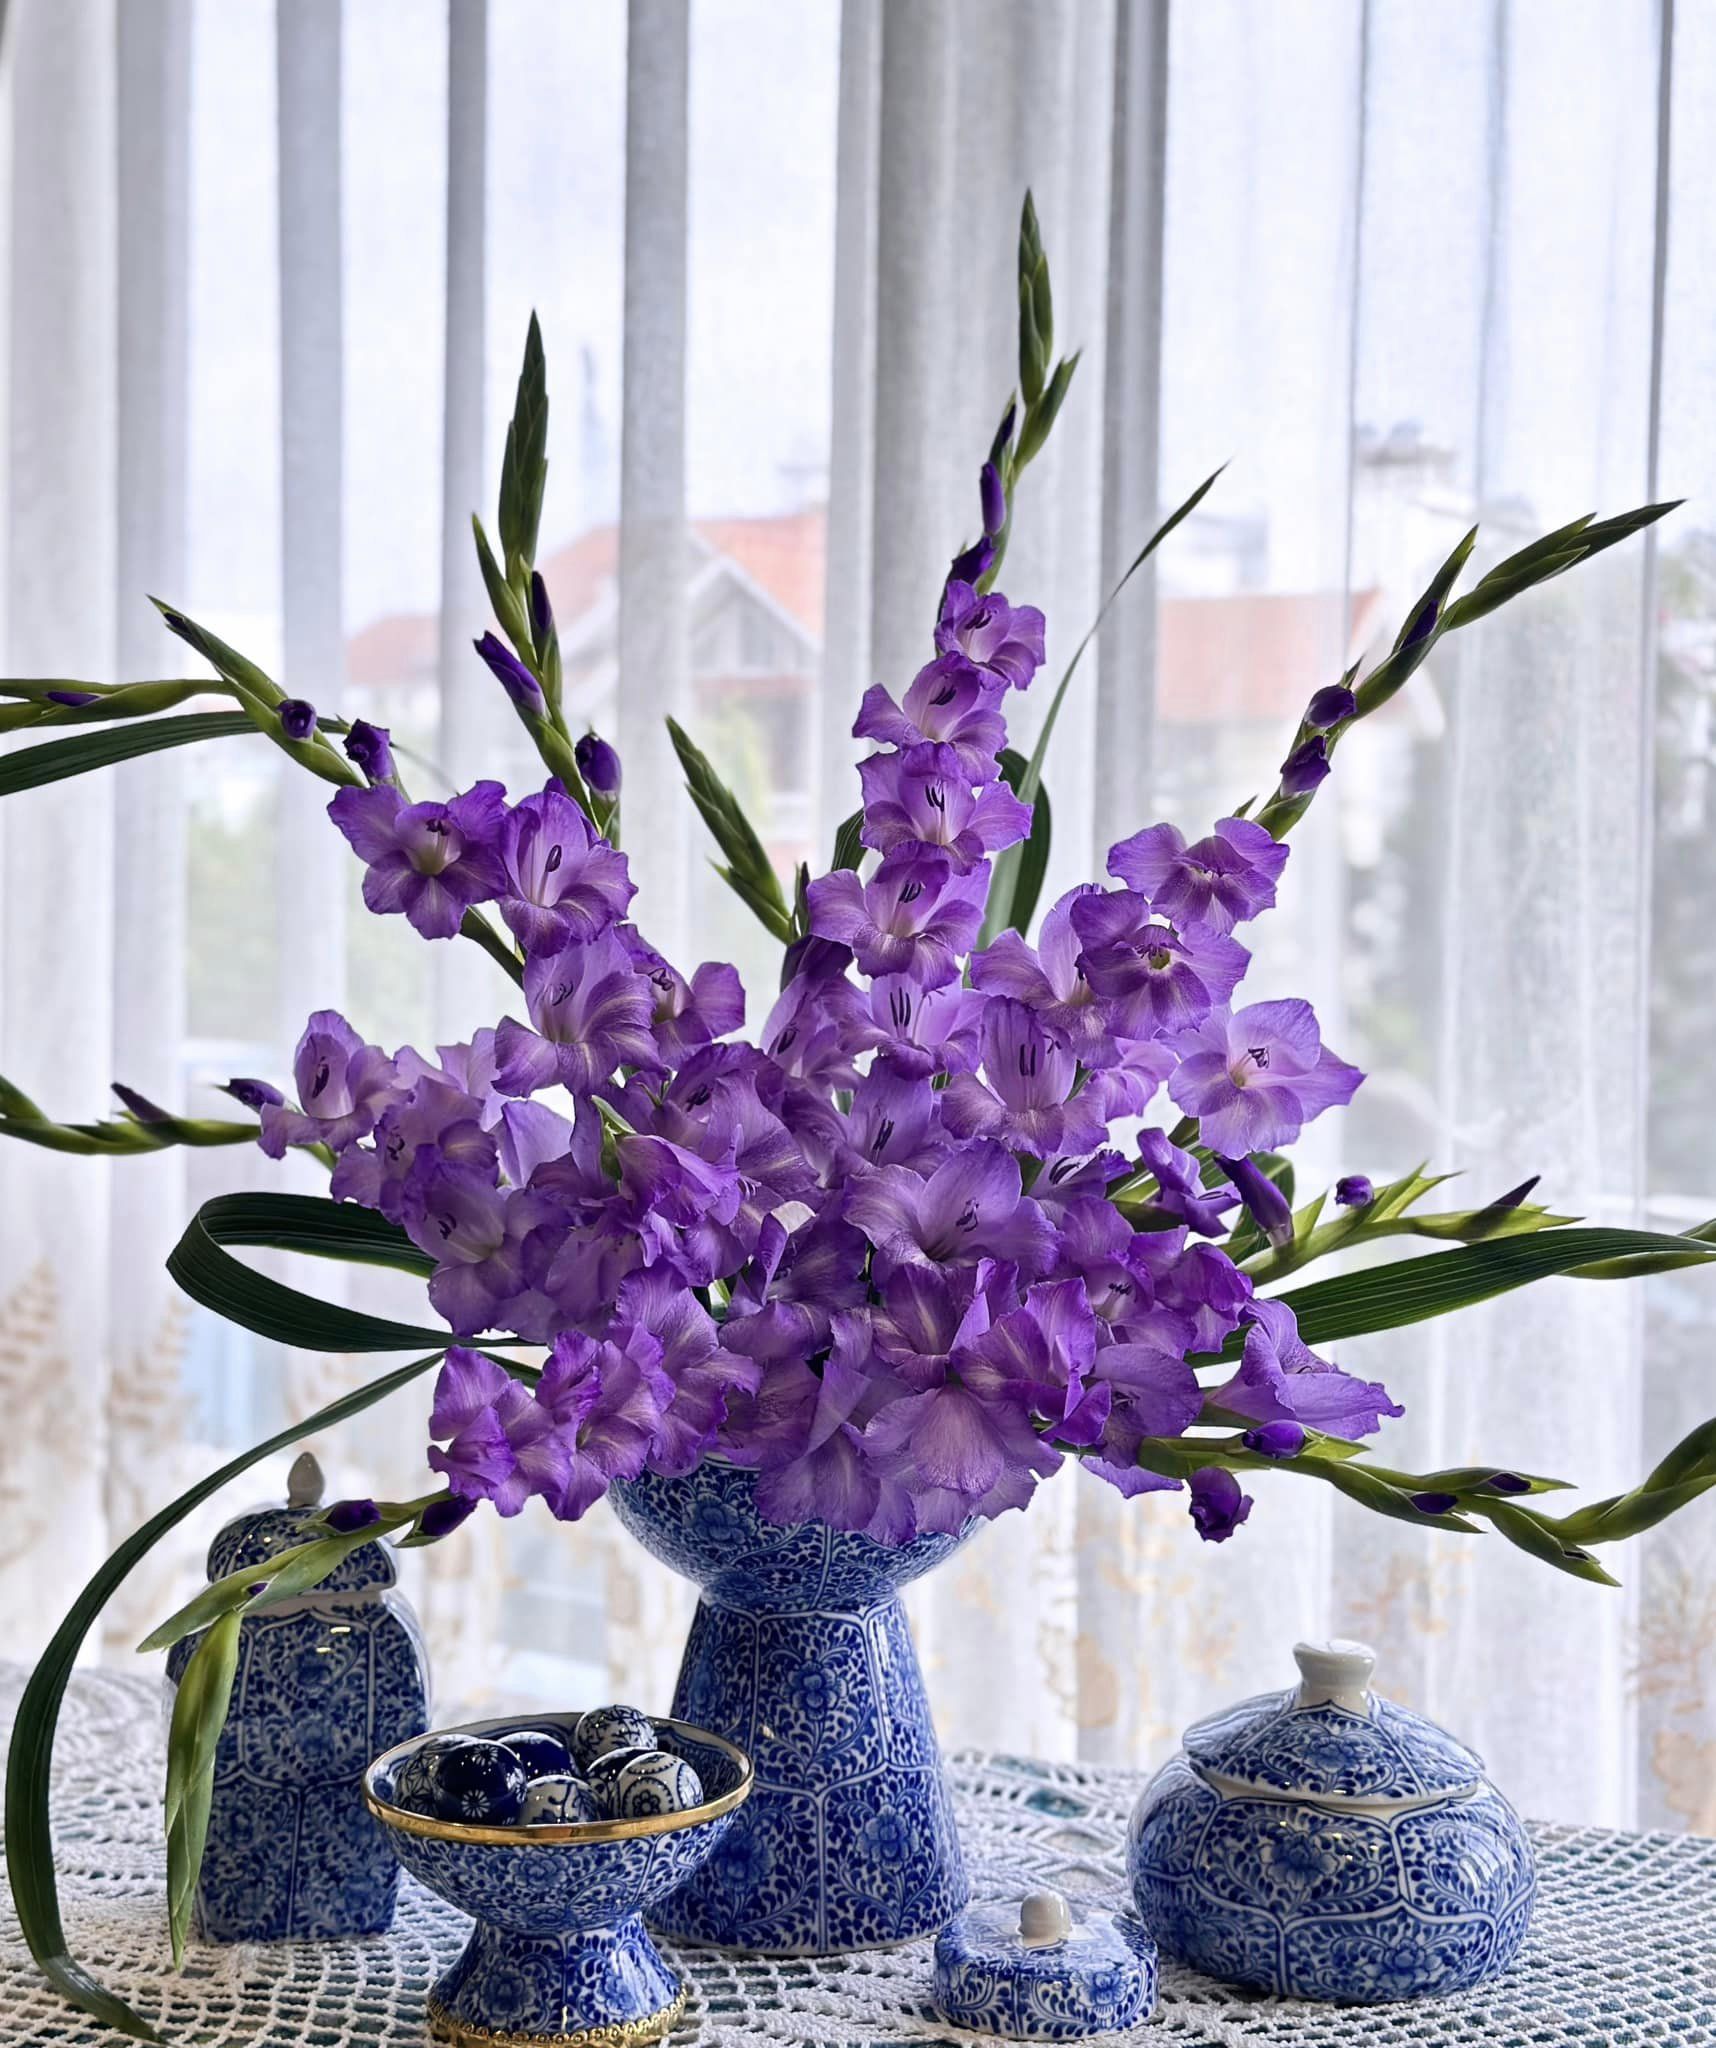 Loài hoa tượng trưng cho may mắn, Tết này cắm một bình trong nhà, đảm bảo cả năm vượng tài, vui vẻ, giá lại rẻ - Ảnh 18.